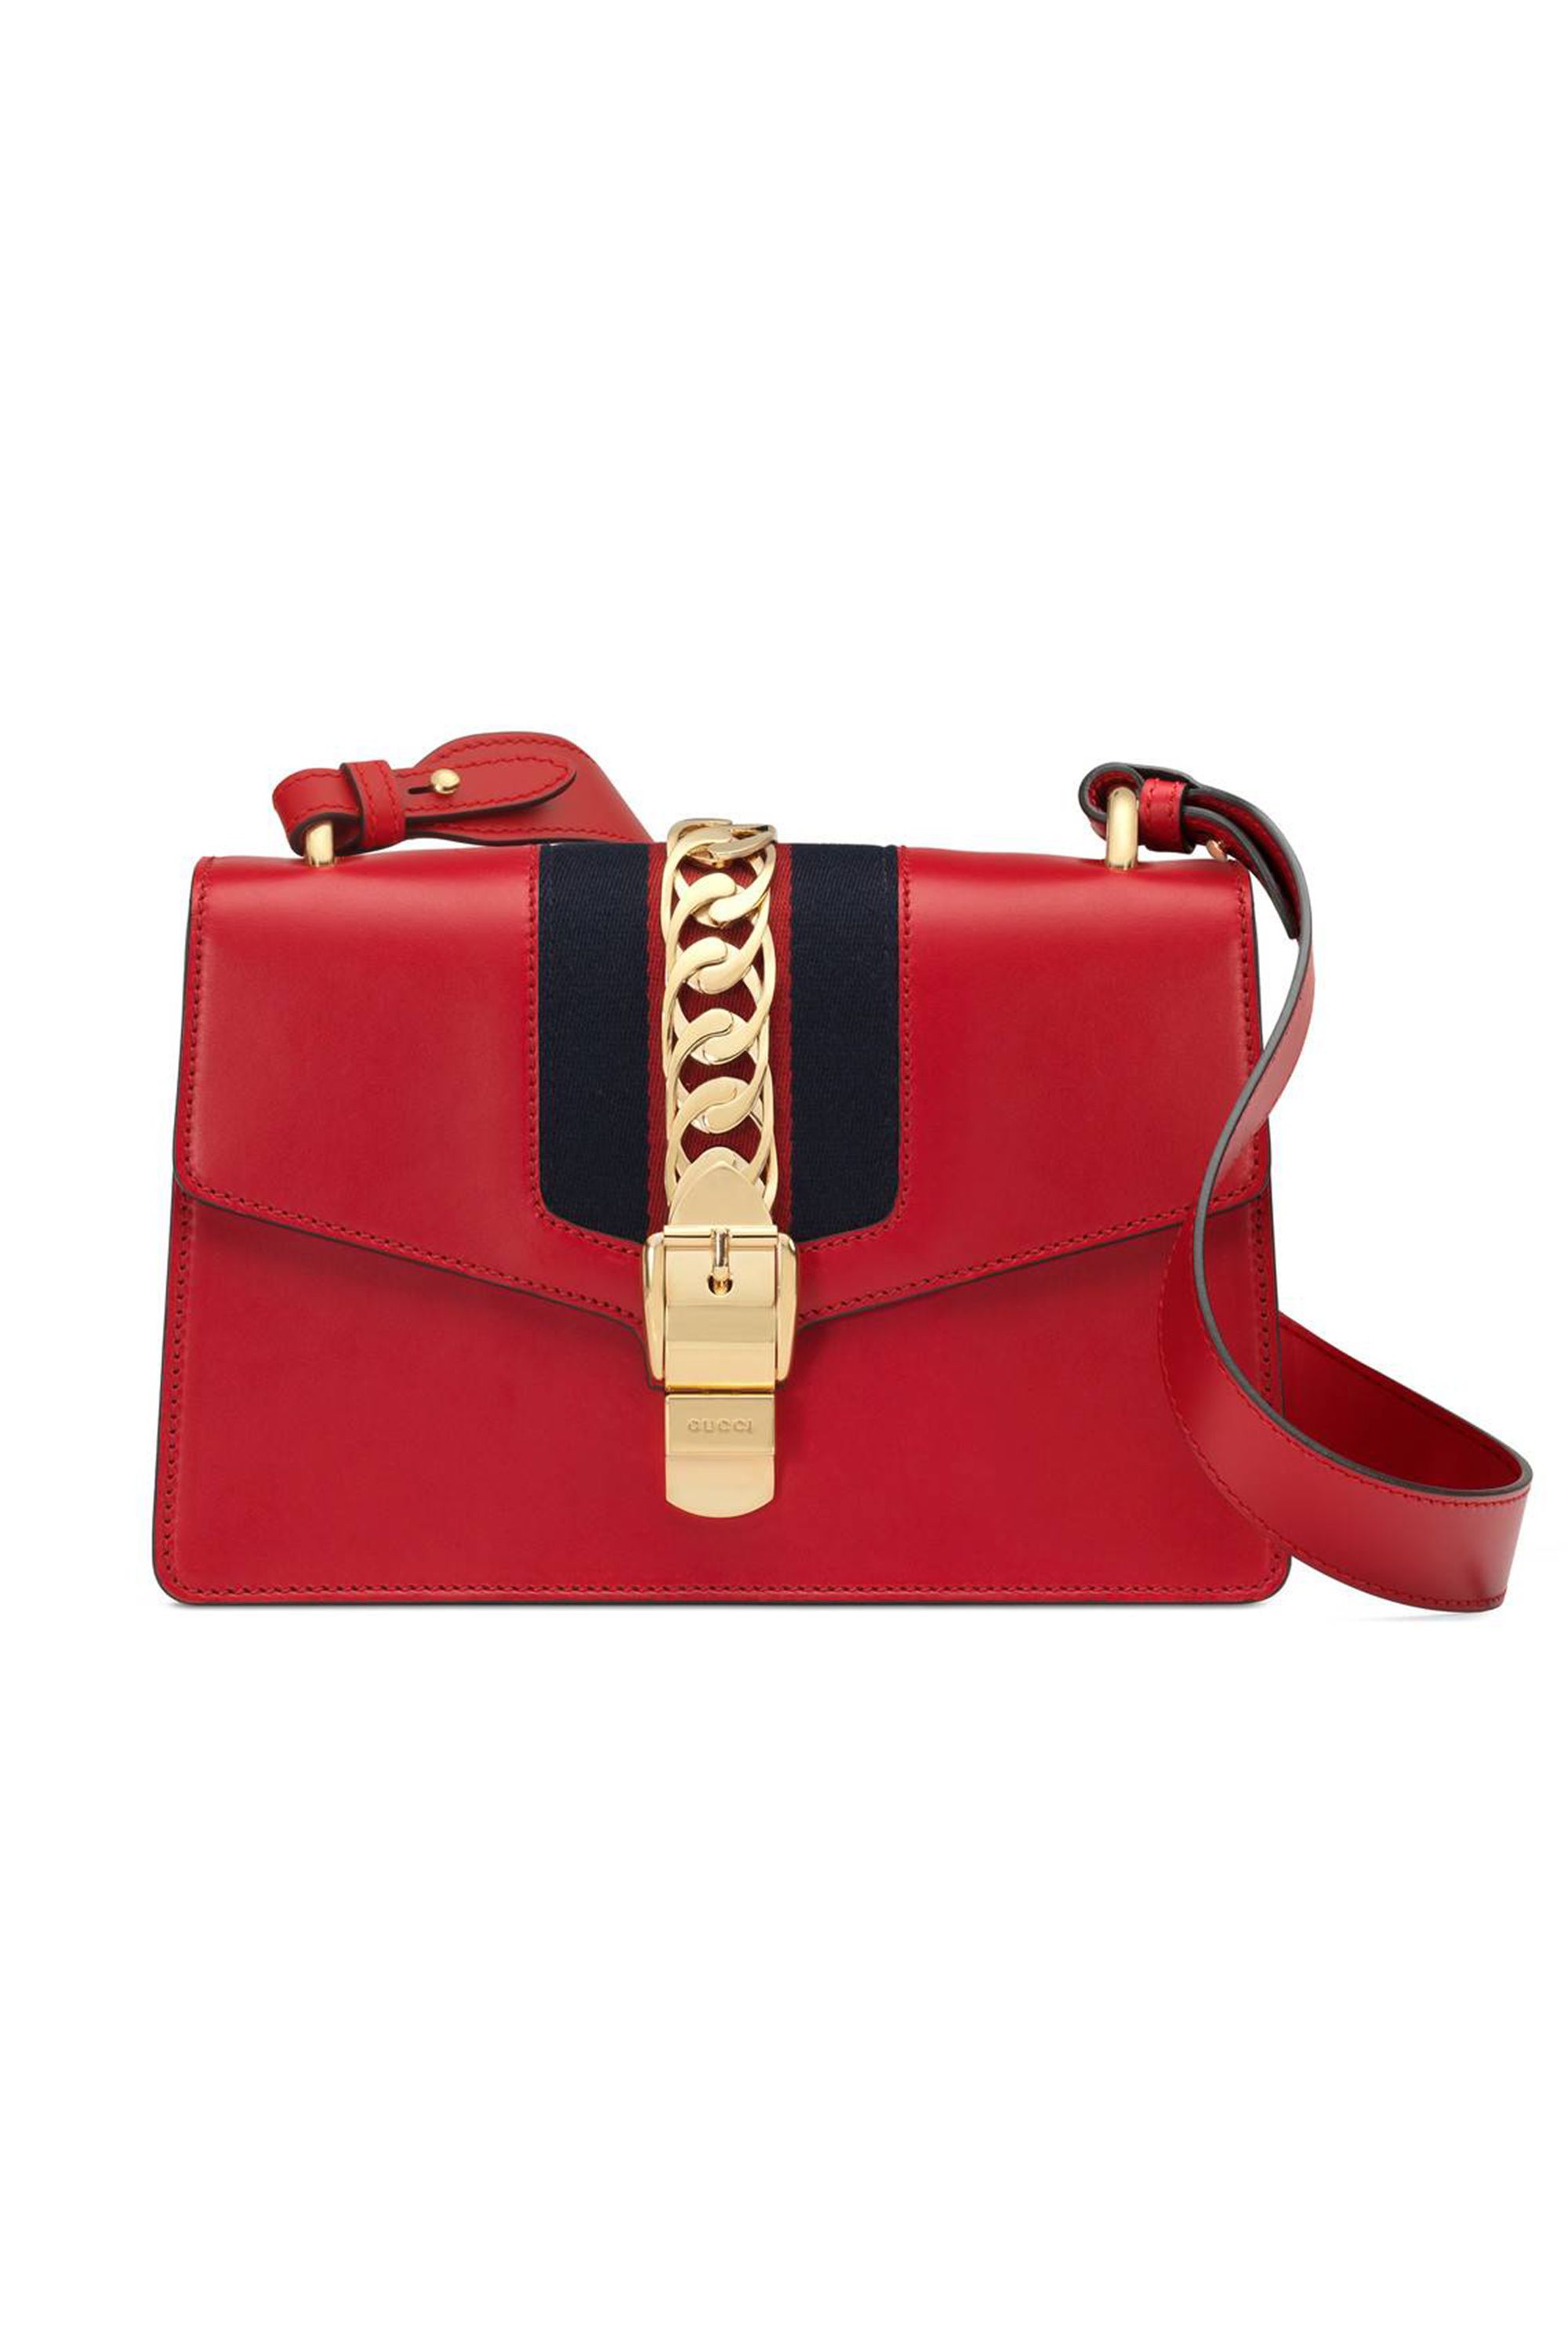 Handbag, Bag, Red, Fashion accessory, Shoulder bag, Leather, Material property, Magenta, Buckle, Beige, 